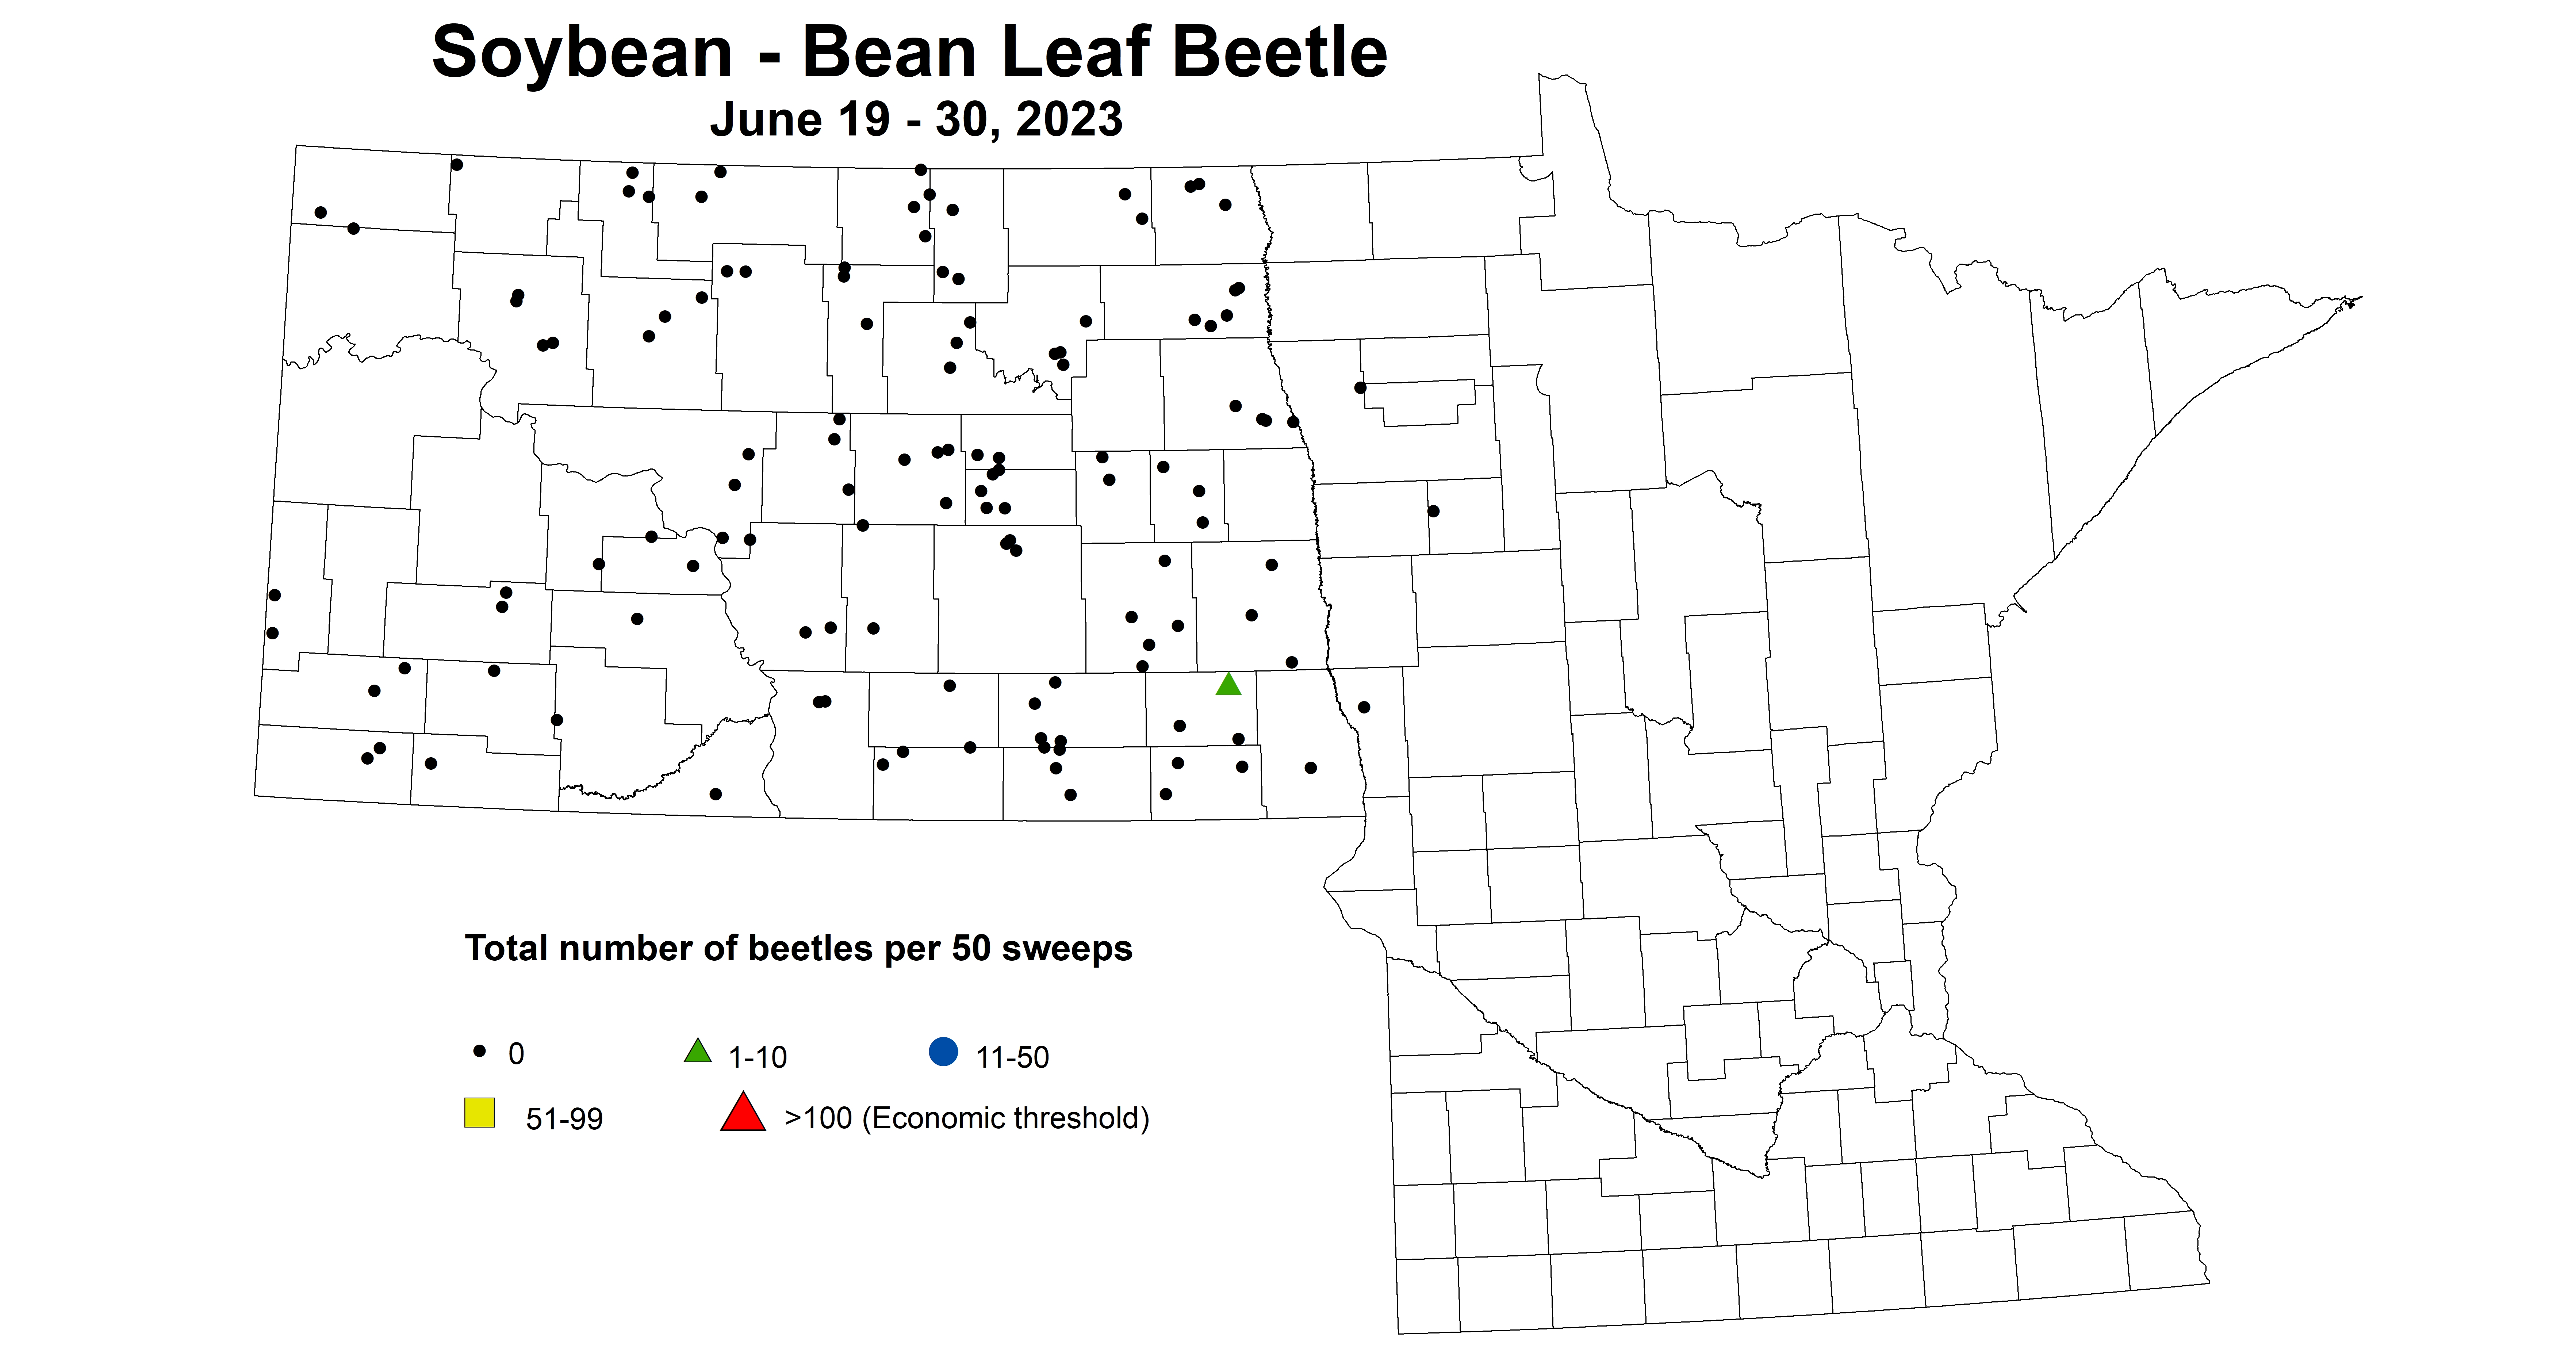 soybean BLB total number of beetles per 50 sweeps June 19-30 2023